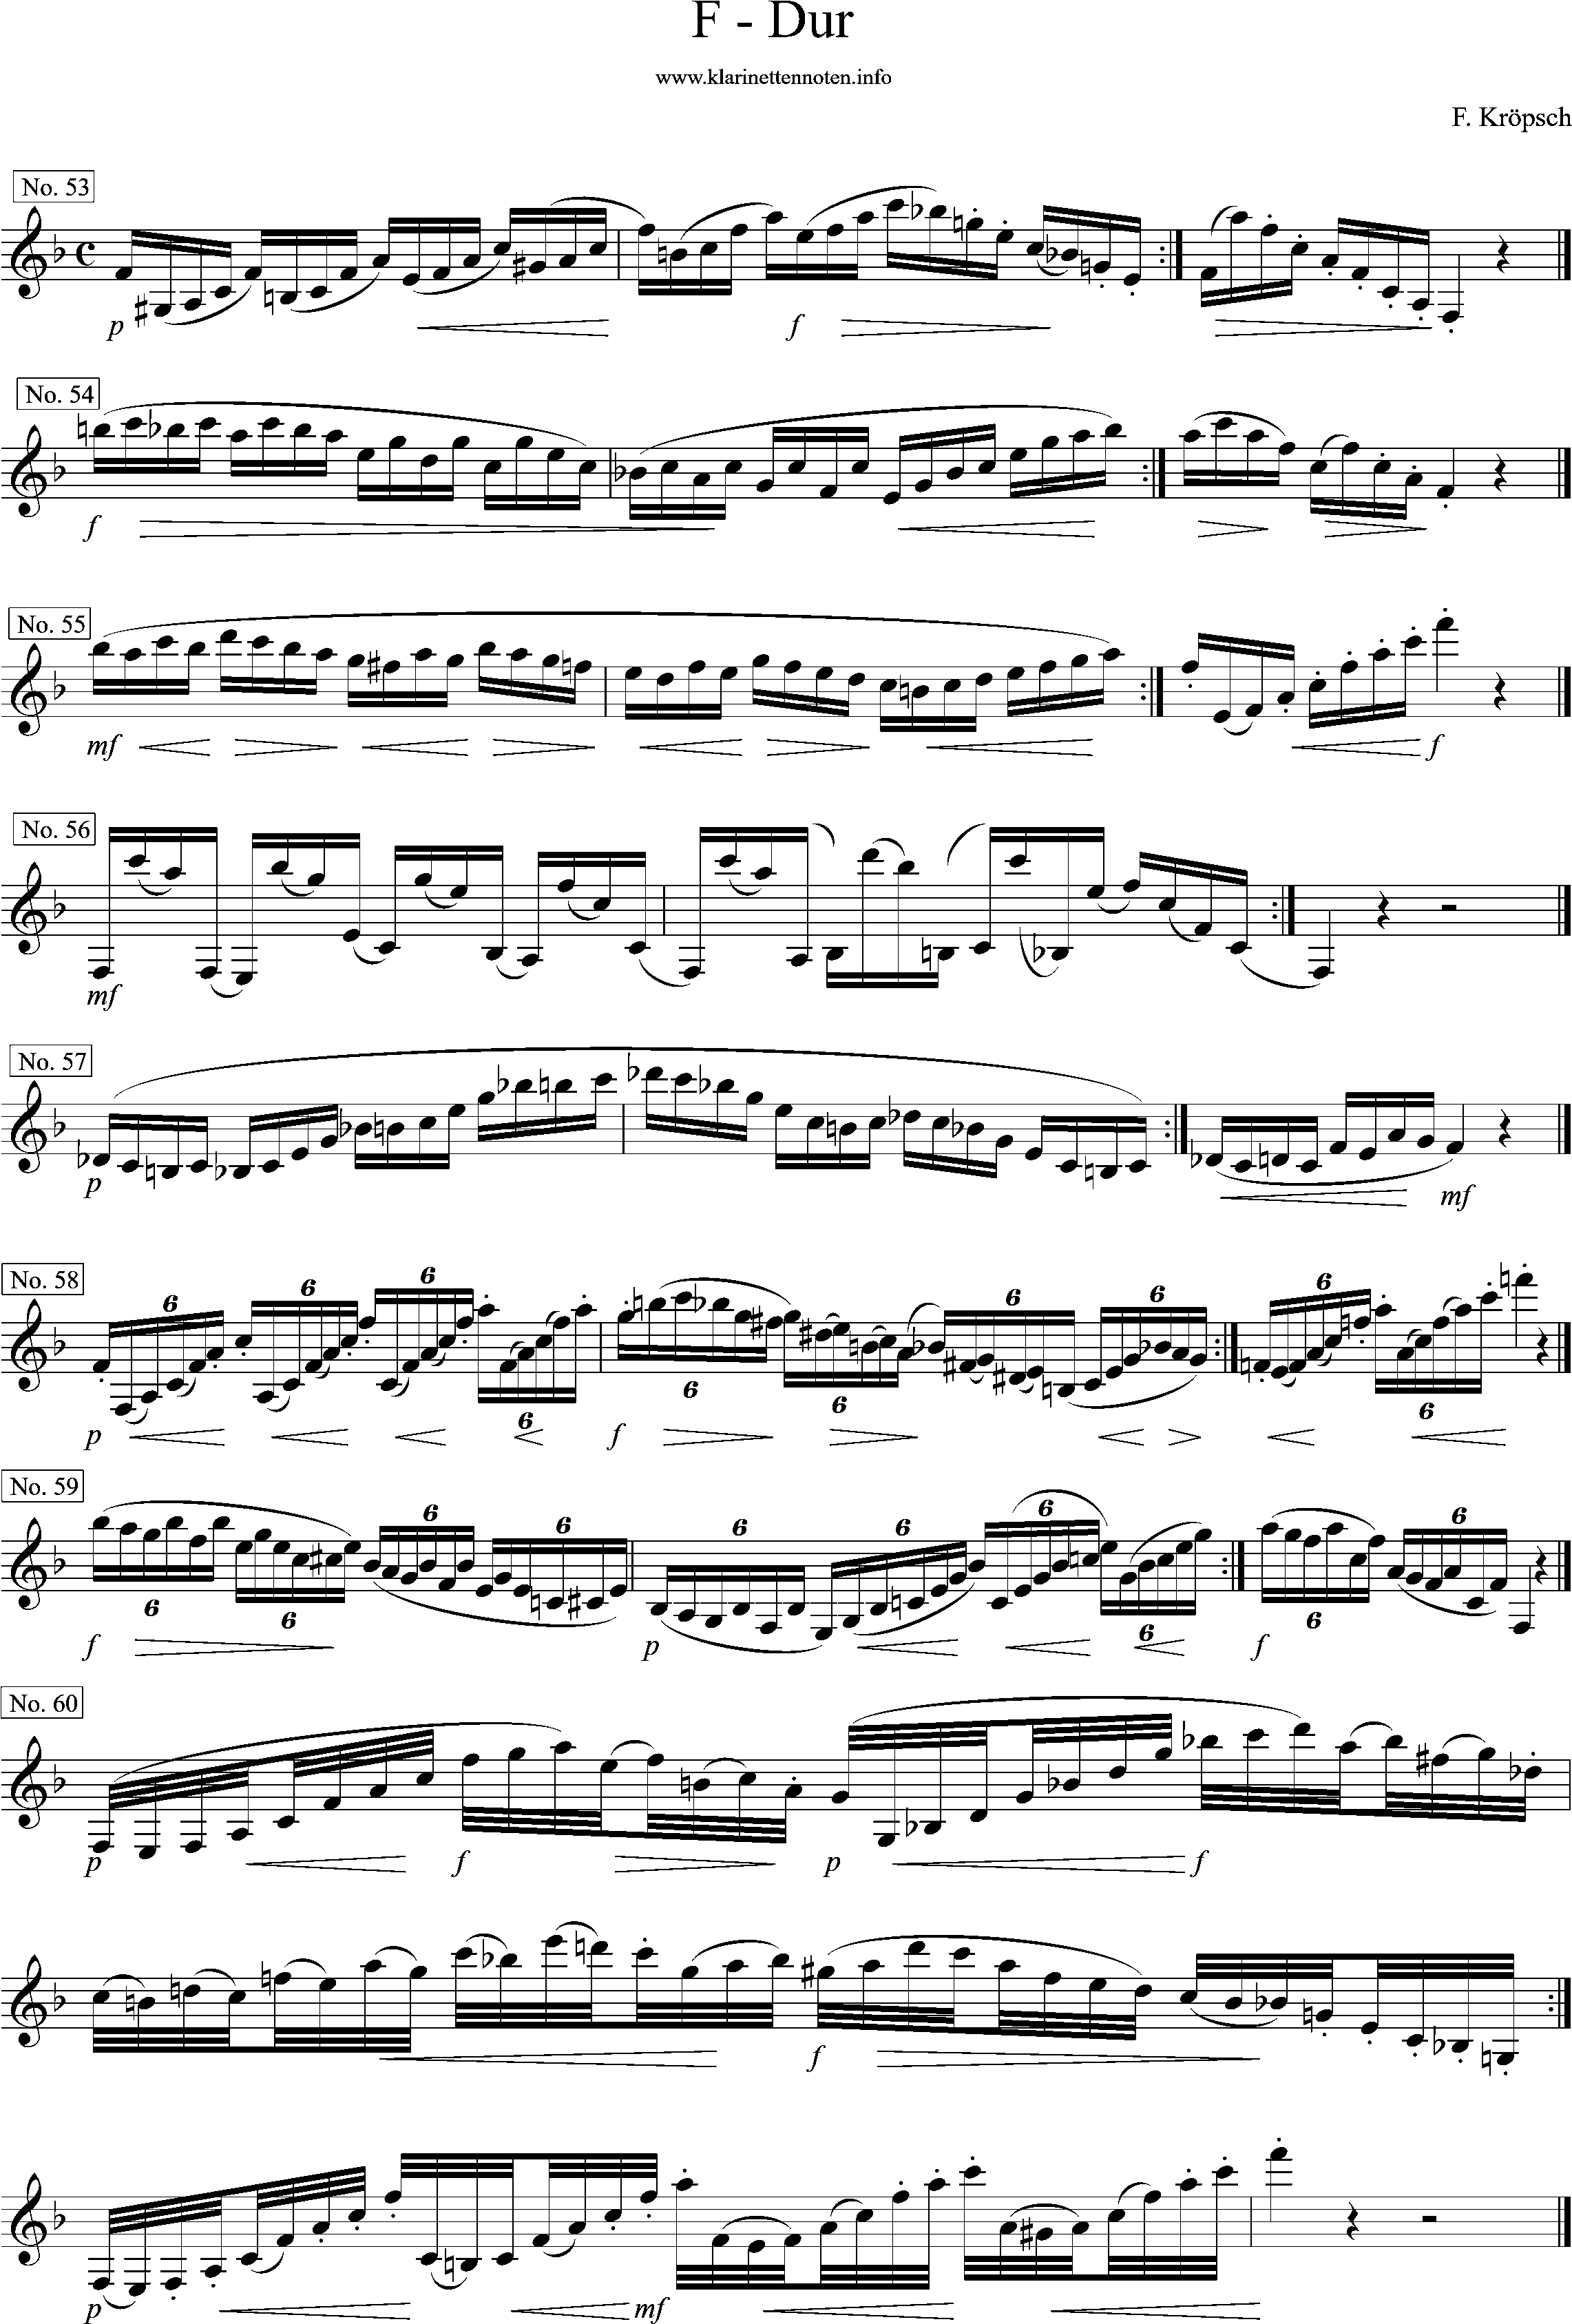 F-Dur, 416 etüden, Fritz Kröpsch, Seite 1